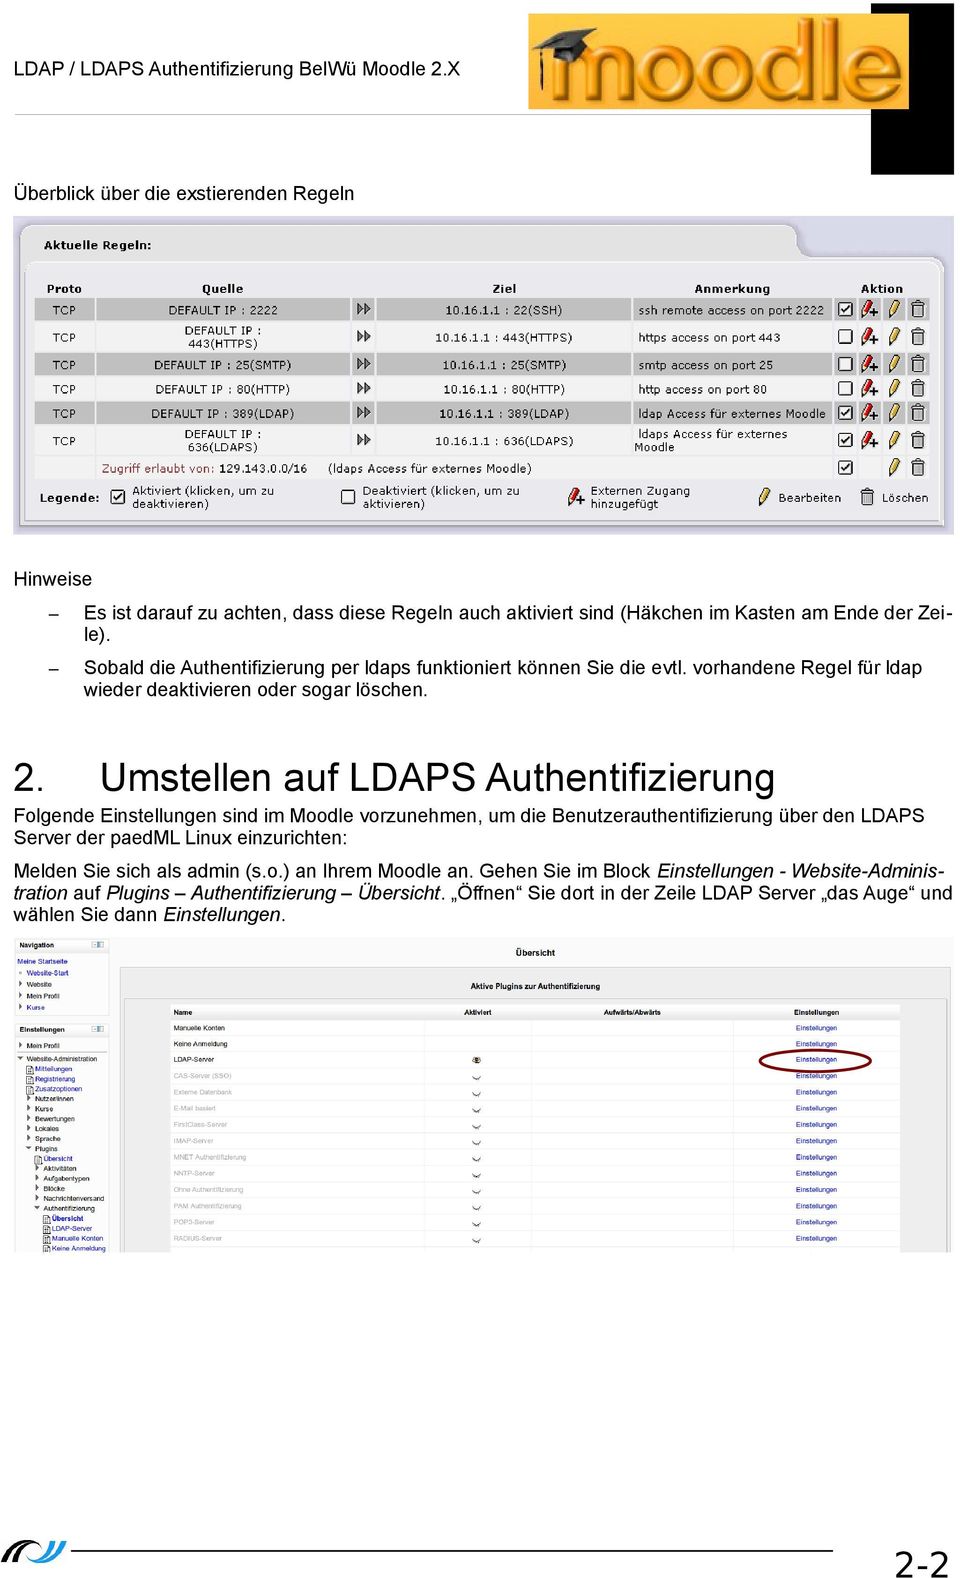 Umstellen auf LDAPS Authentifizierung Folgende Einstellungen sind im Moodle vorzunehmen, um die Benutzerauthentifizierung über den LDAPS Server der paedml Linux einzurichten: